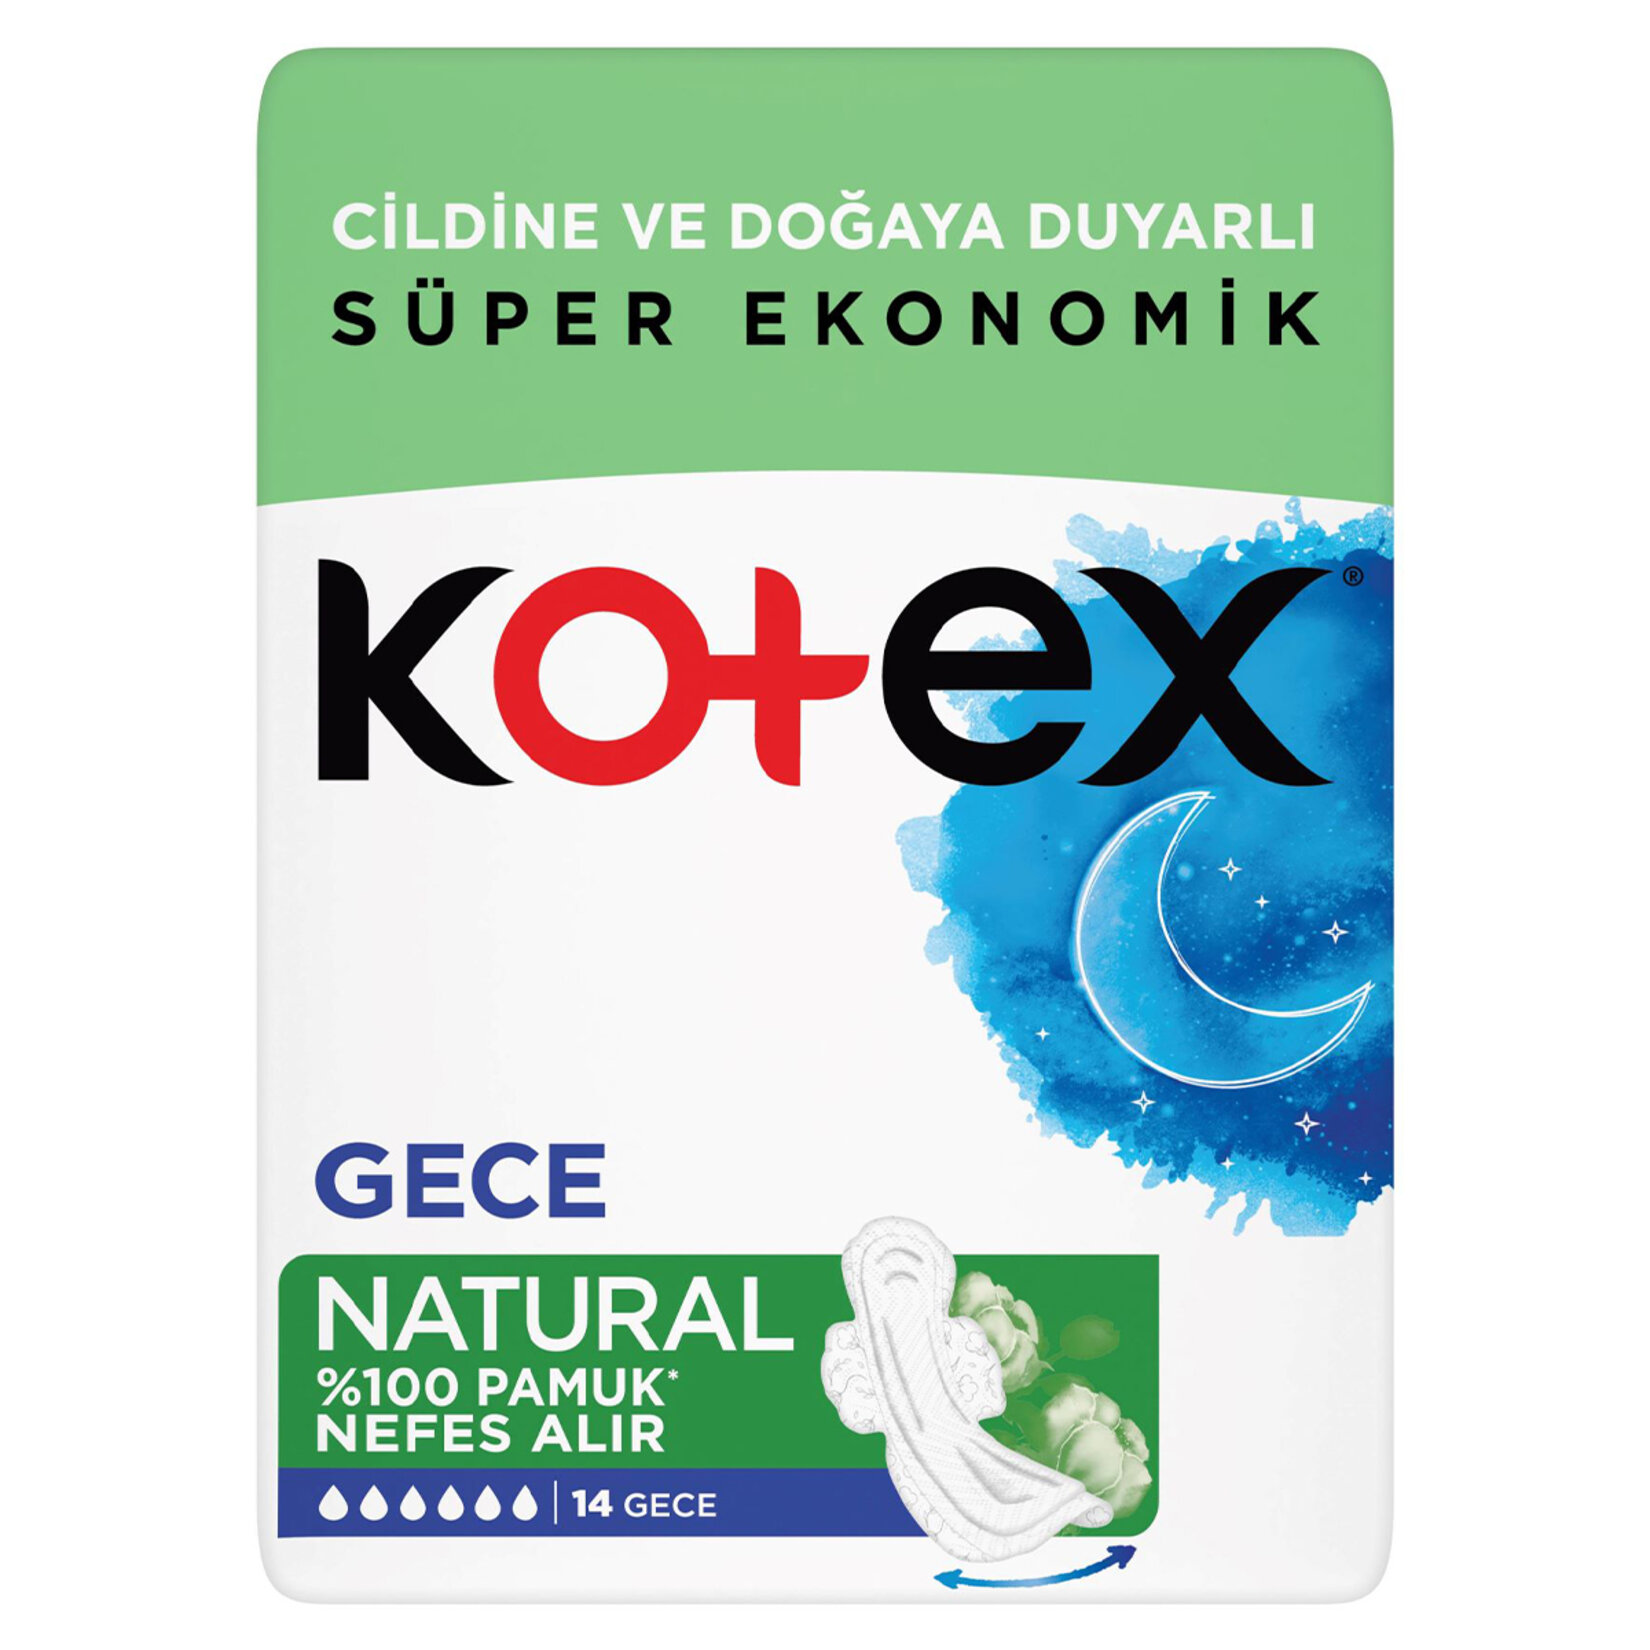 Kotex Natural Ped Gece 14x4 56 Adet